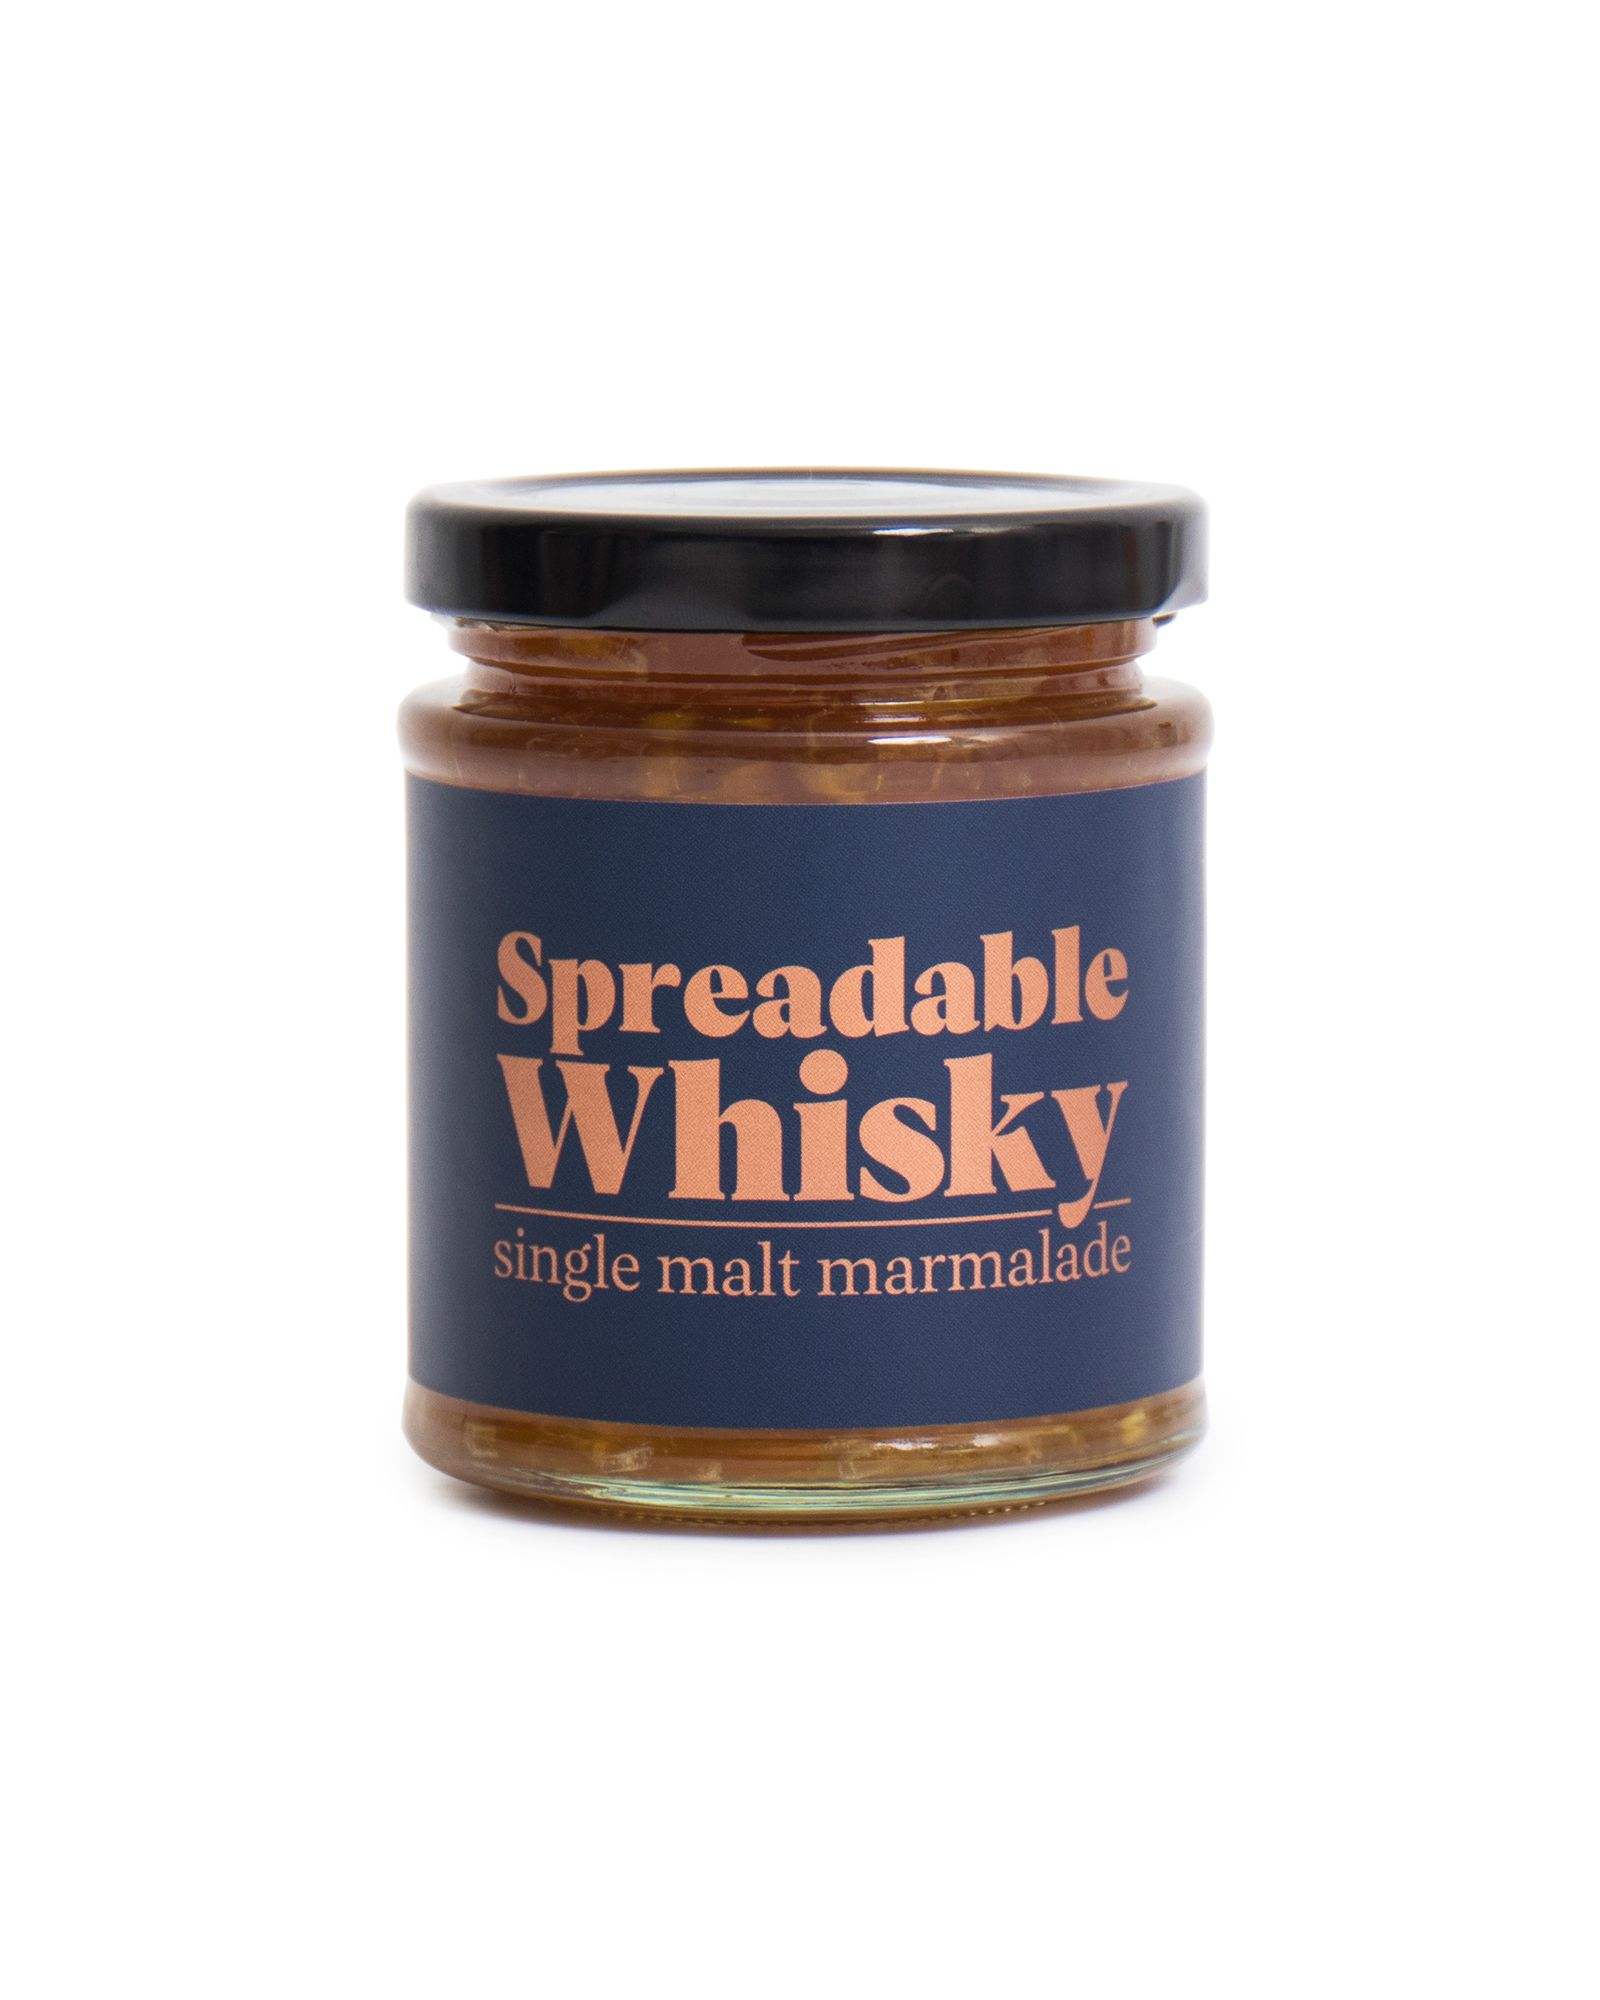 Spreadable Whisky Single Malt Marmalade